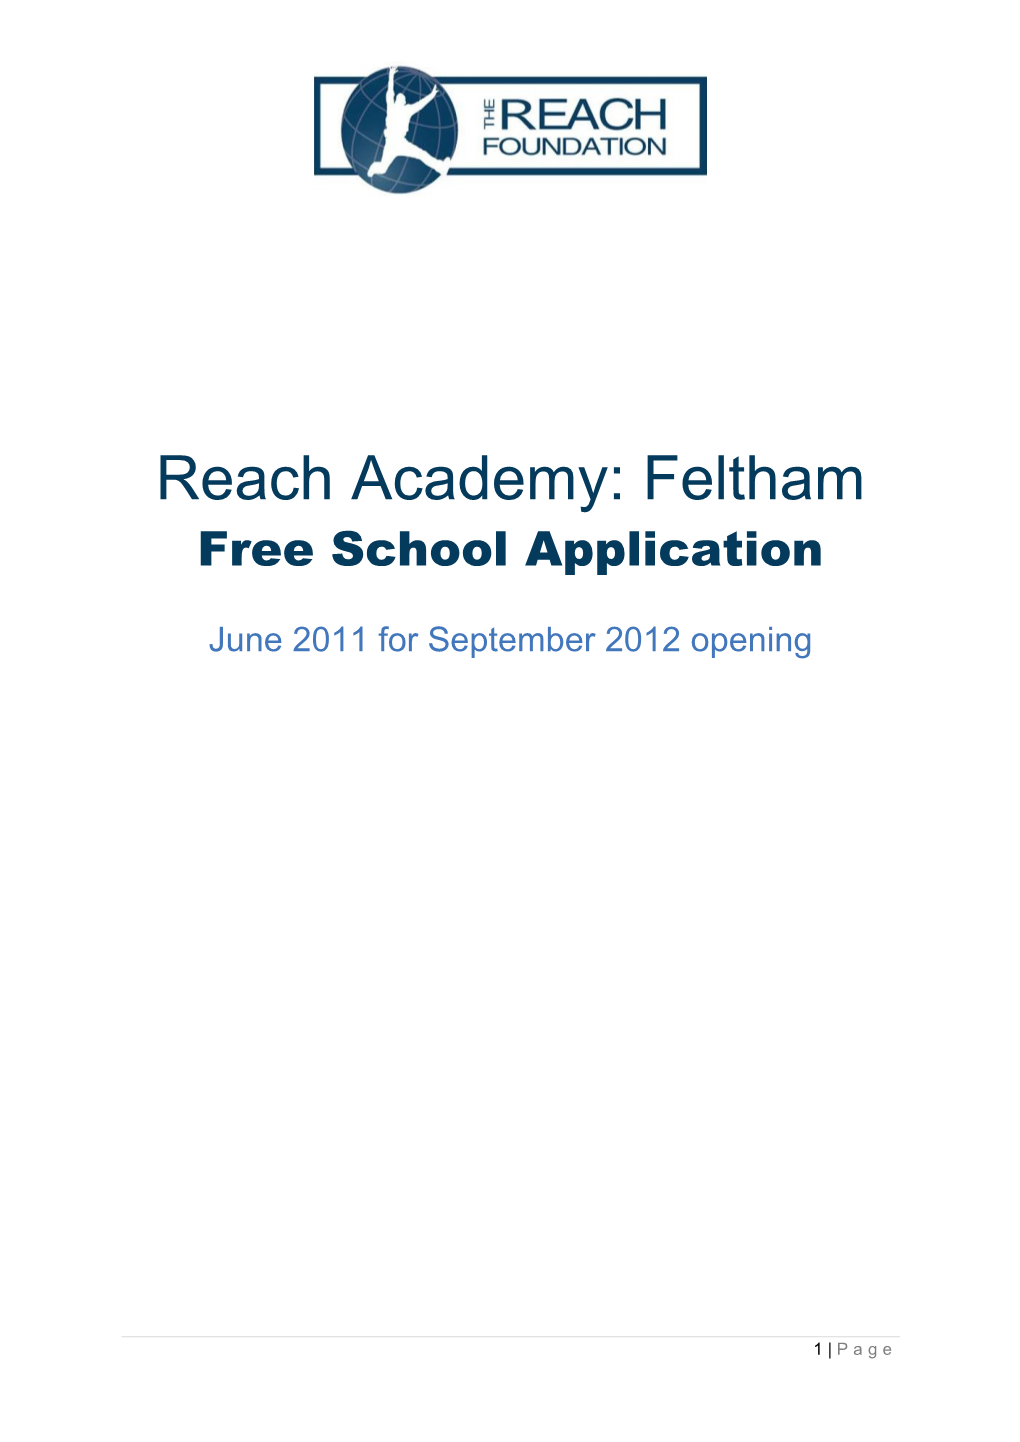 Reach Academy: Feltham Free School Application